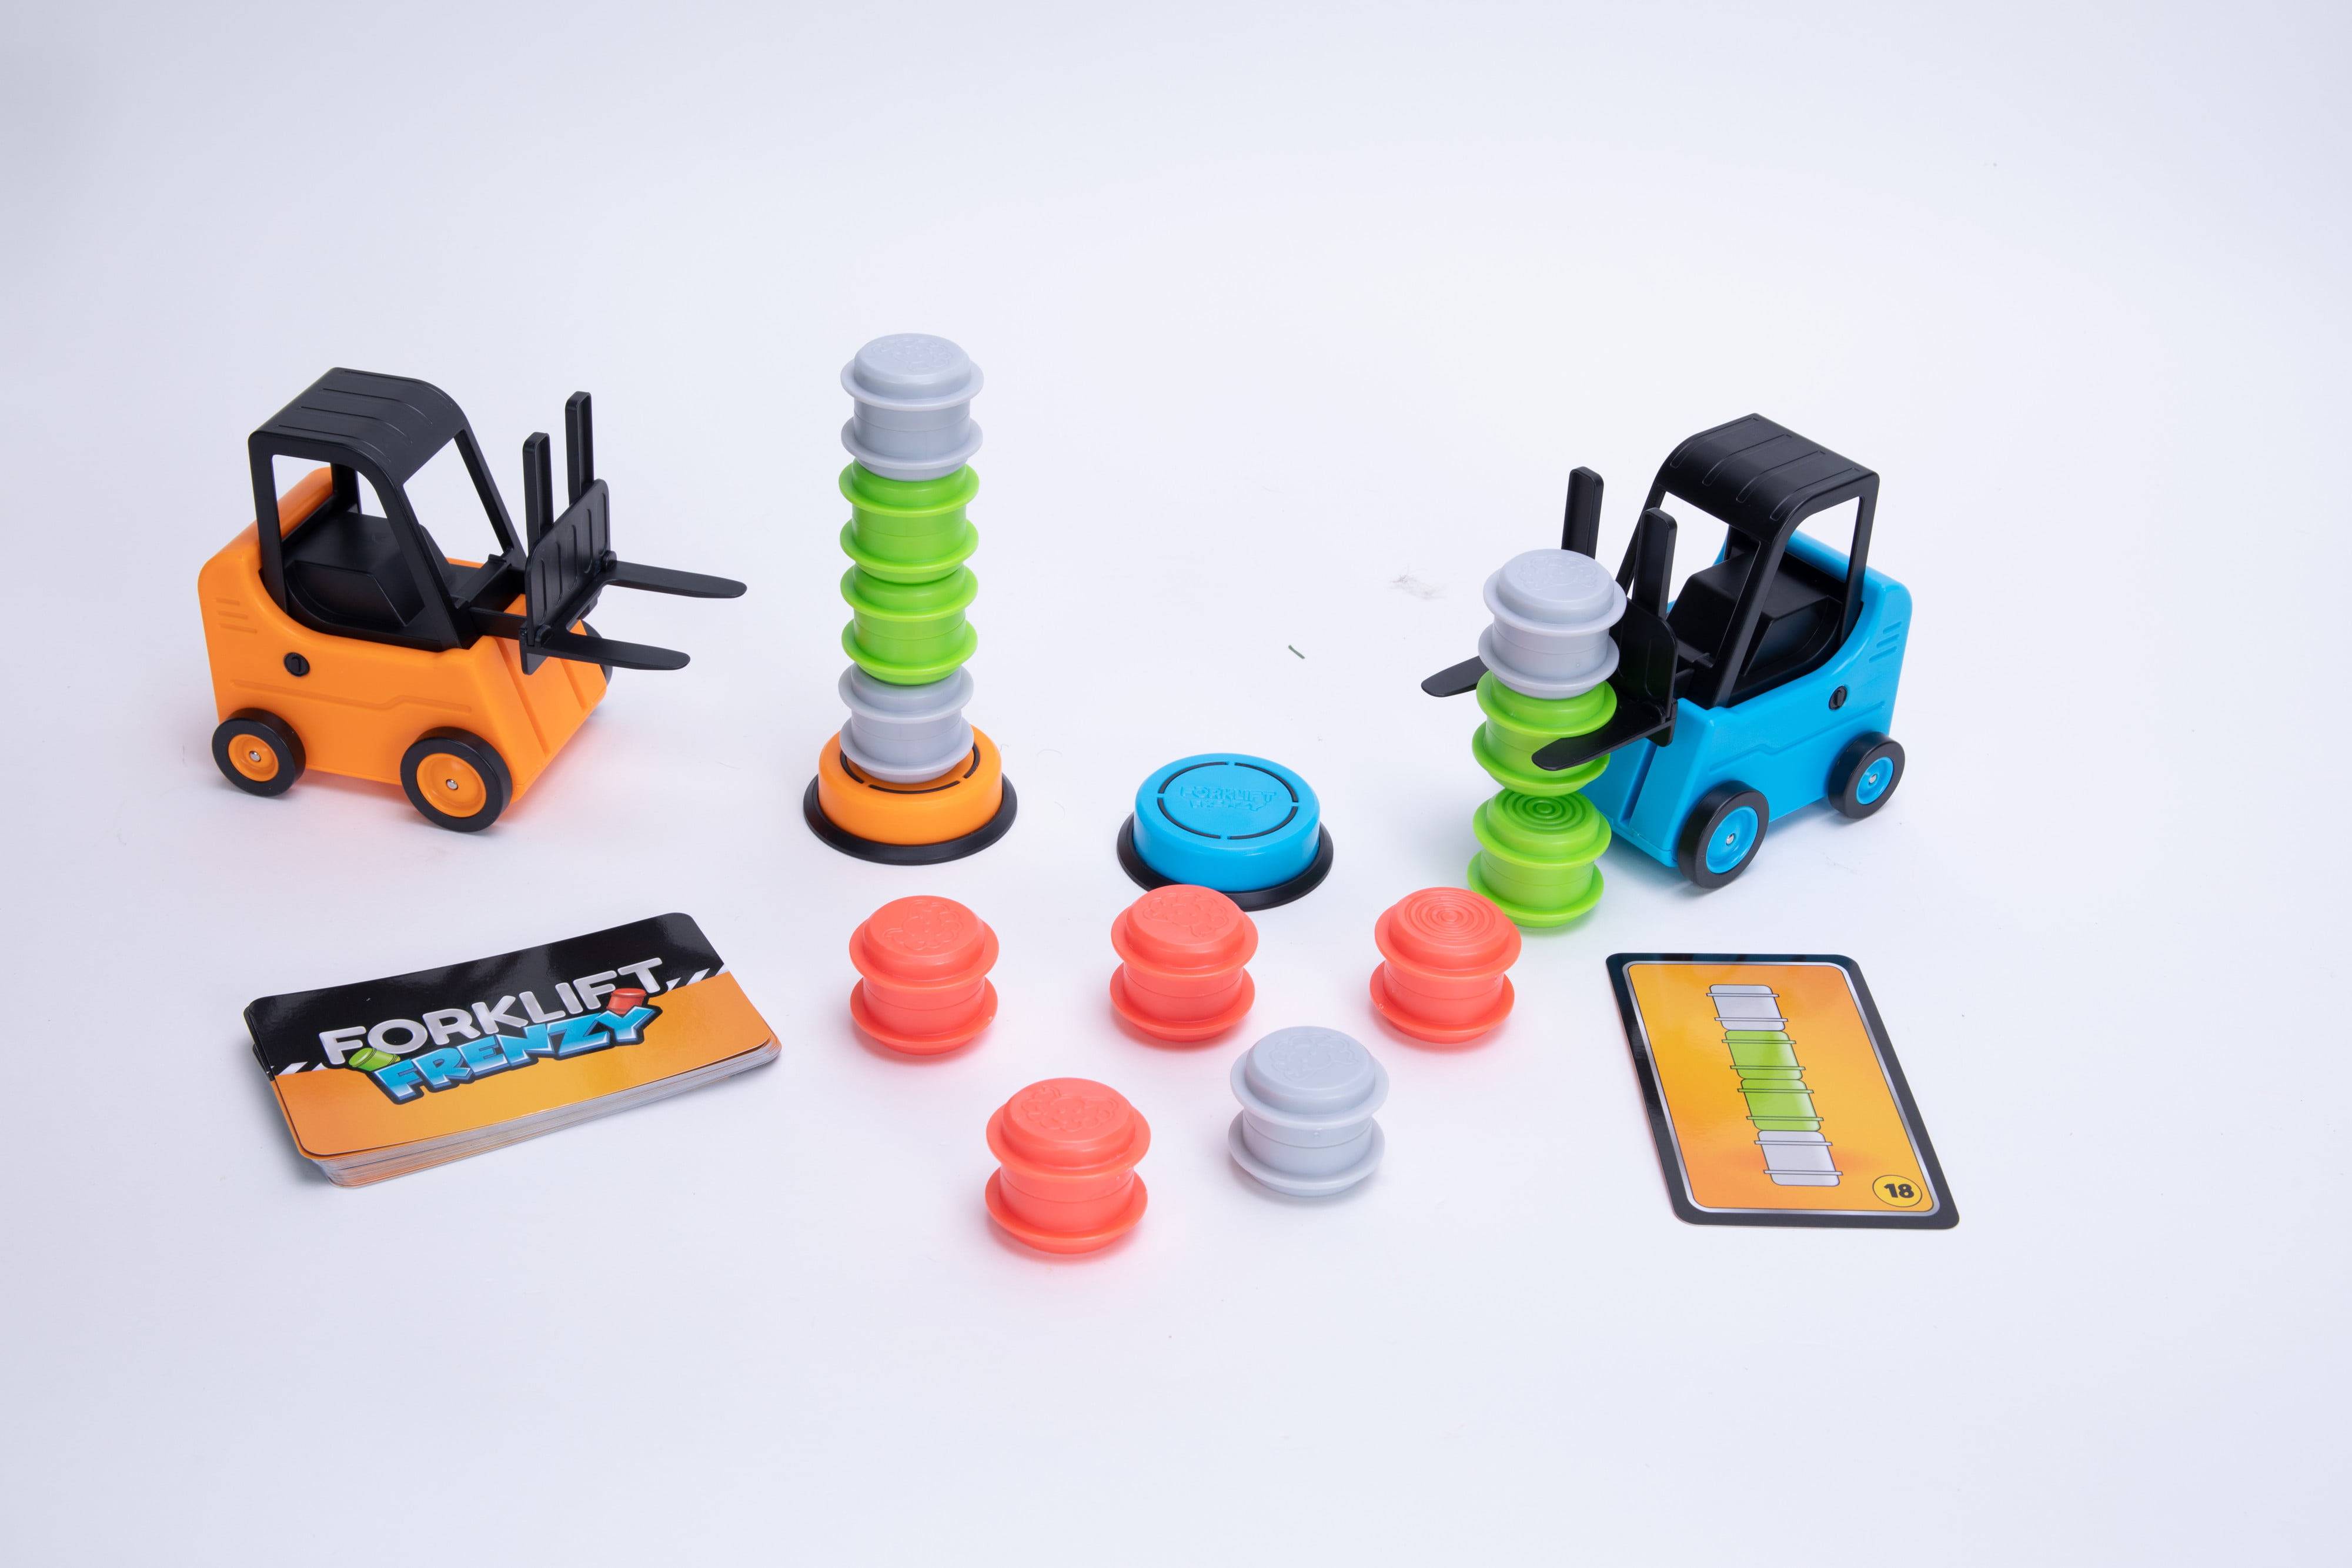 Forklift Transport Game, Forklift Frenzy - 2-Player Stack